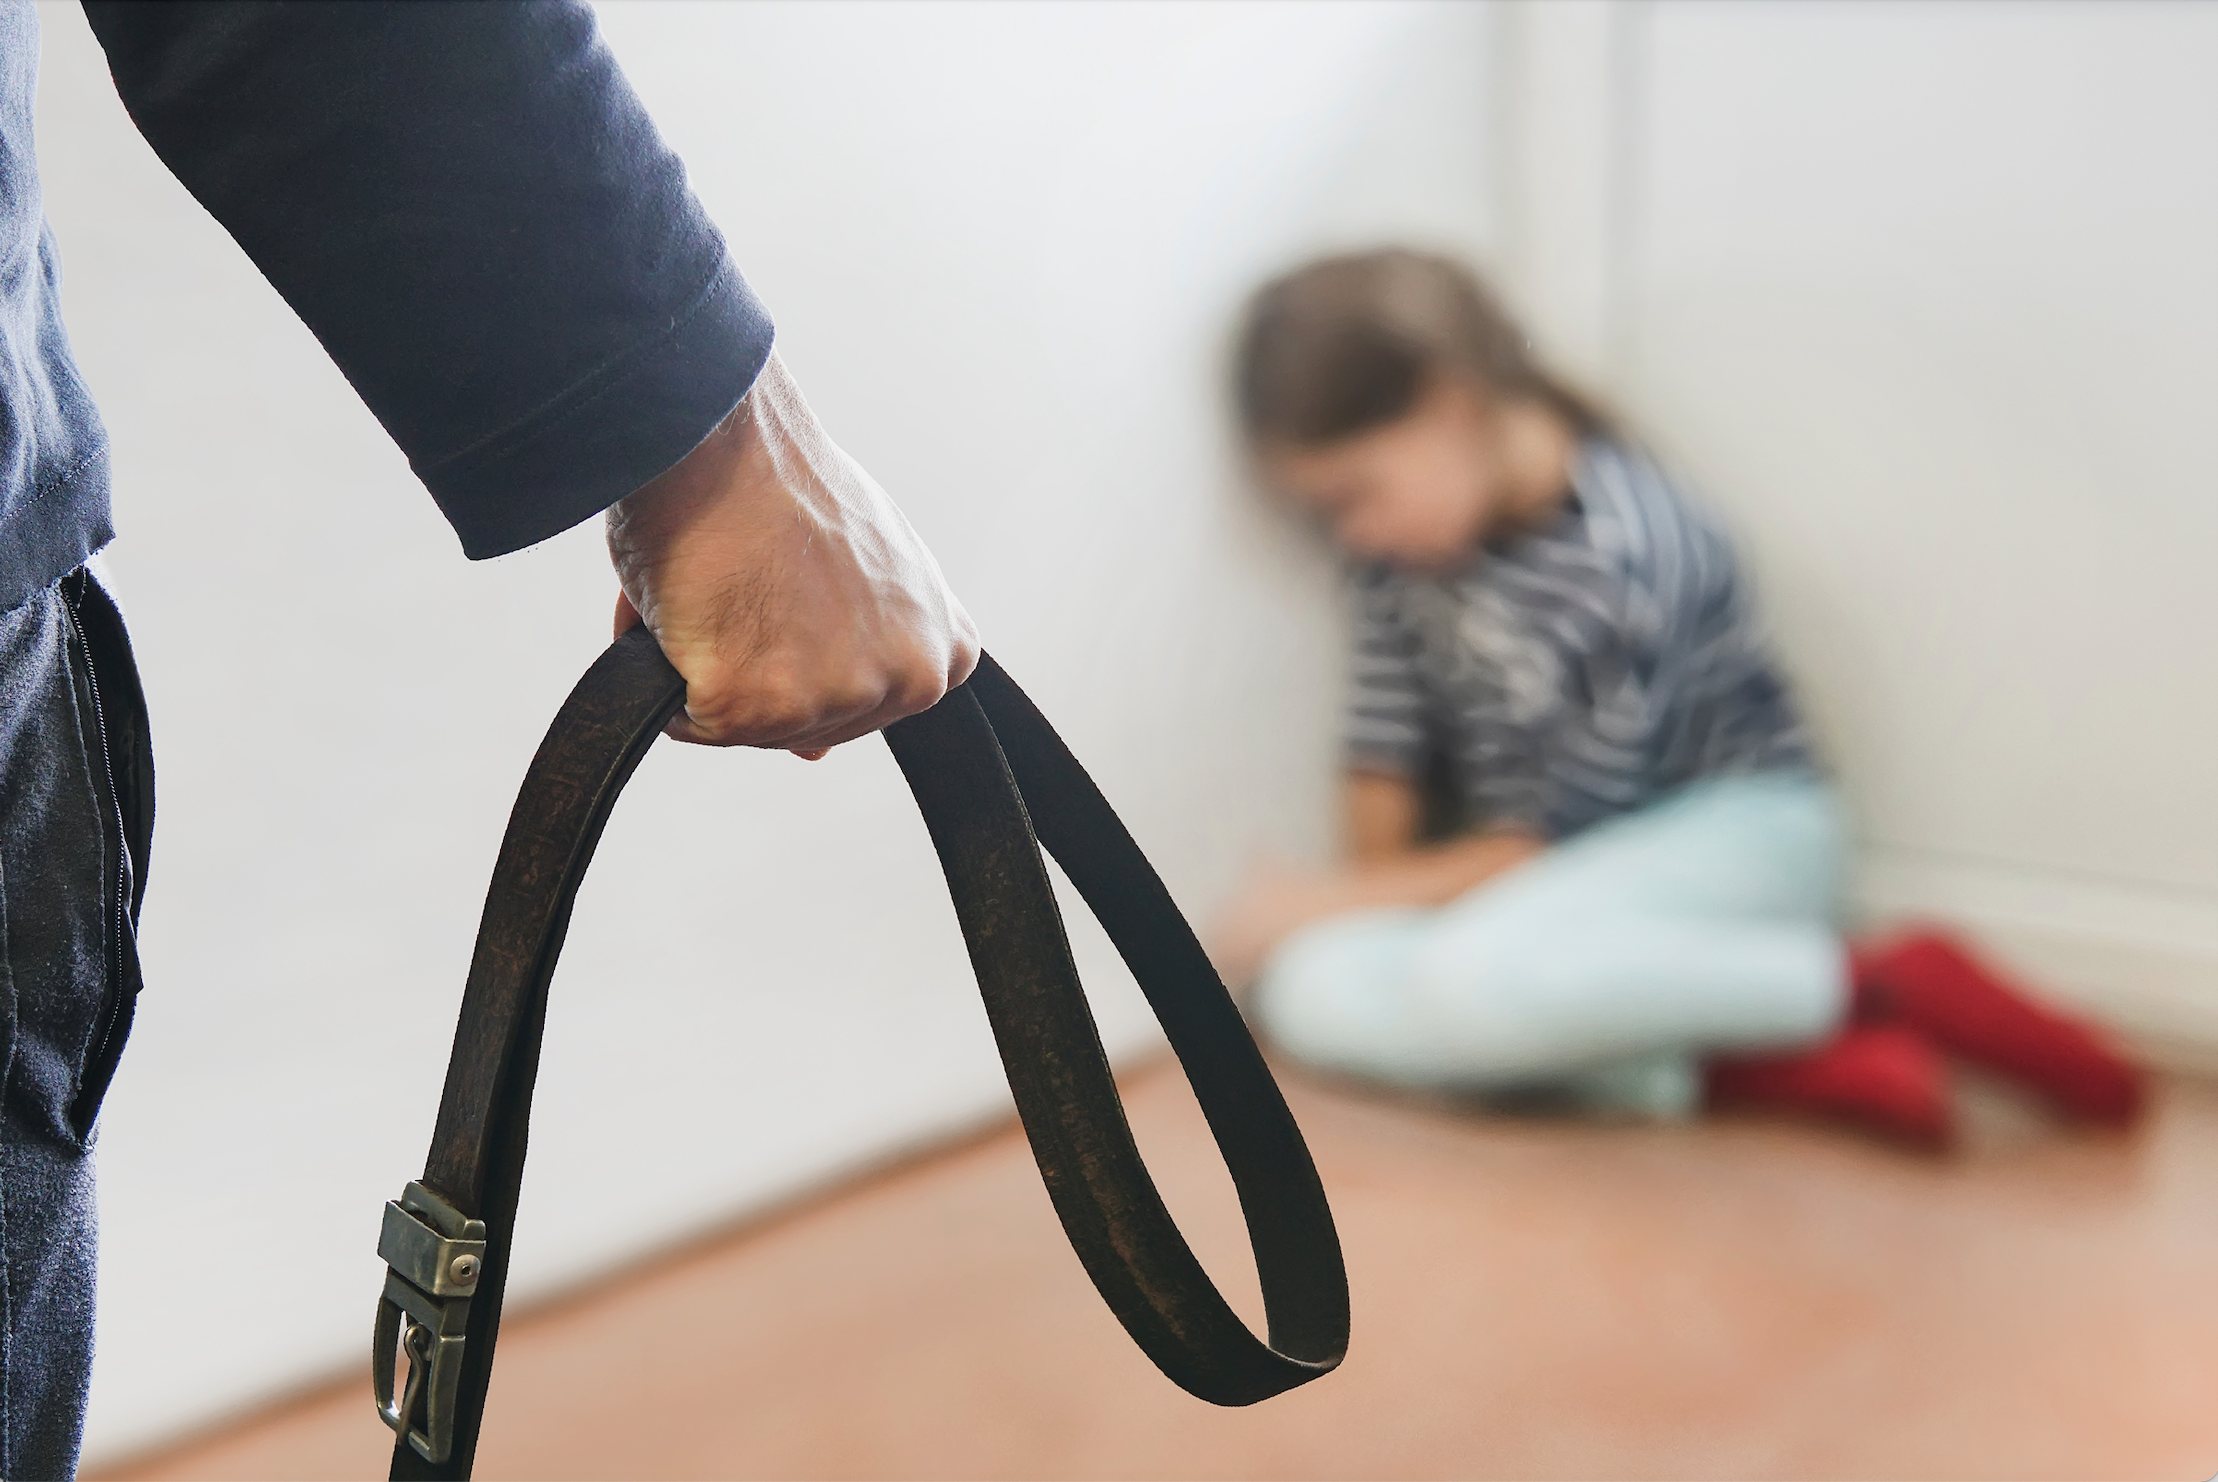 Forsøg Menagerry hvor ofte Spanking Child- Using a Discipline Paddle